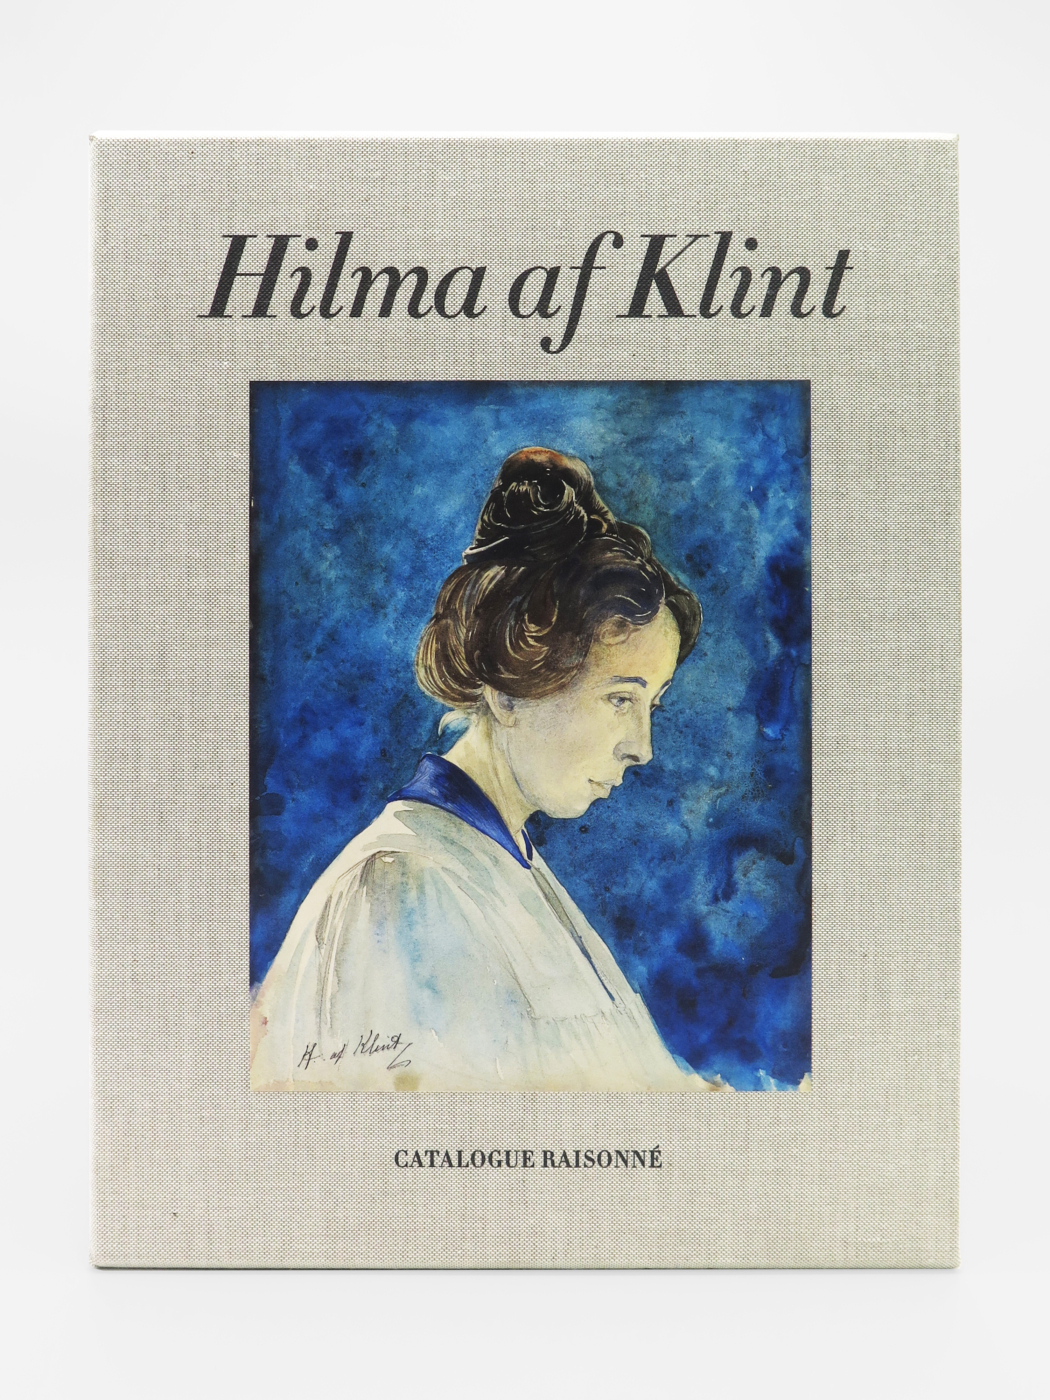 Hilma af Klint, The Complete Catalogue Raisonné